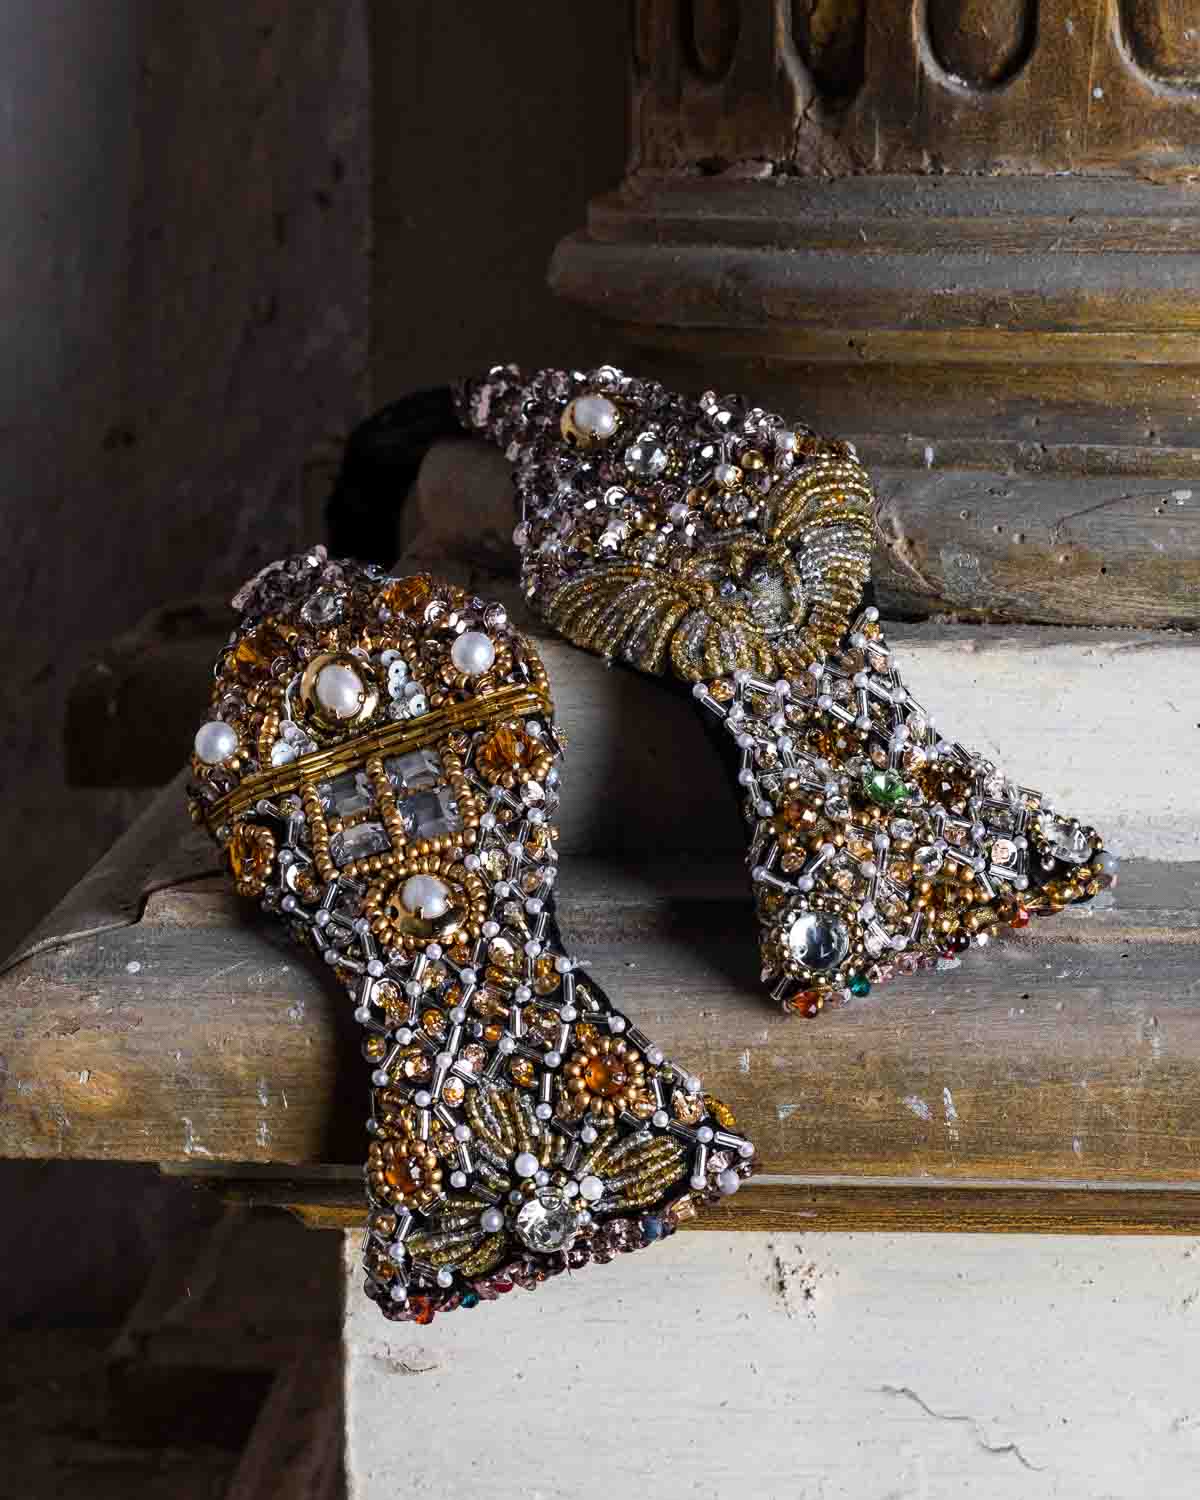 Esclusivo papillon unisex ricamato con pietre strass e perle. Elegante ed originale farfallino per uomo e donna per eventi esclusivi, party e red carpet.